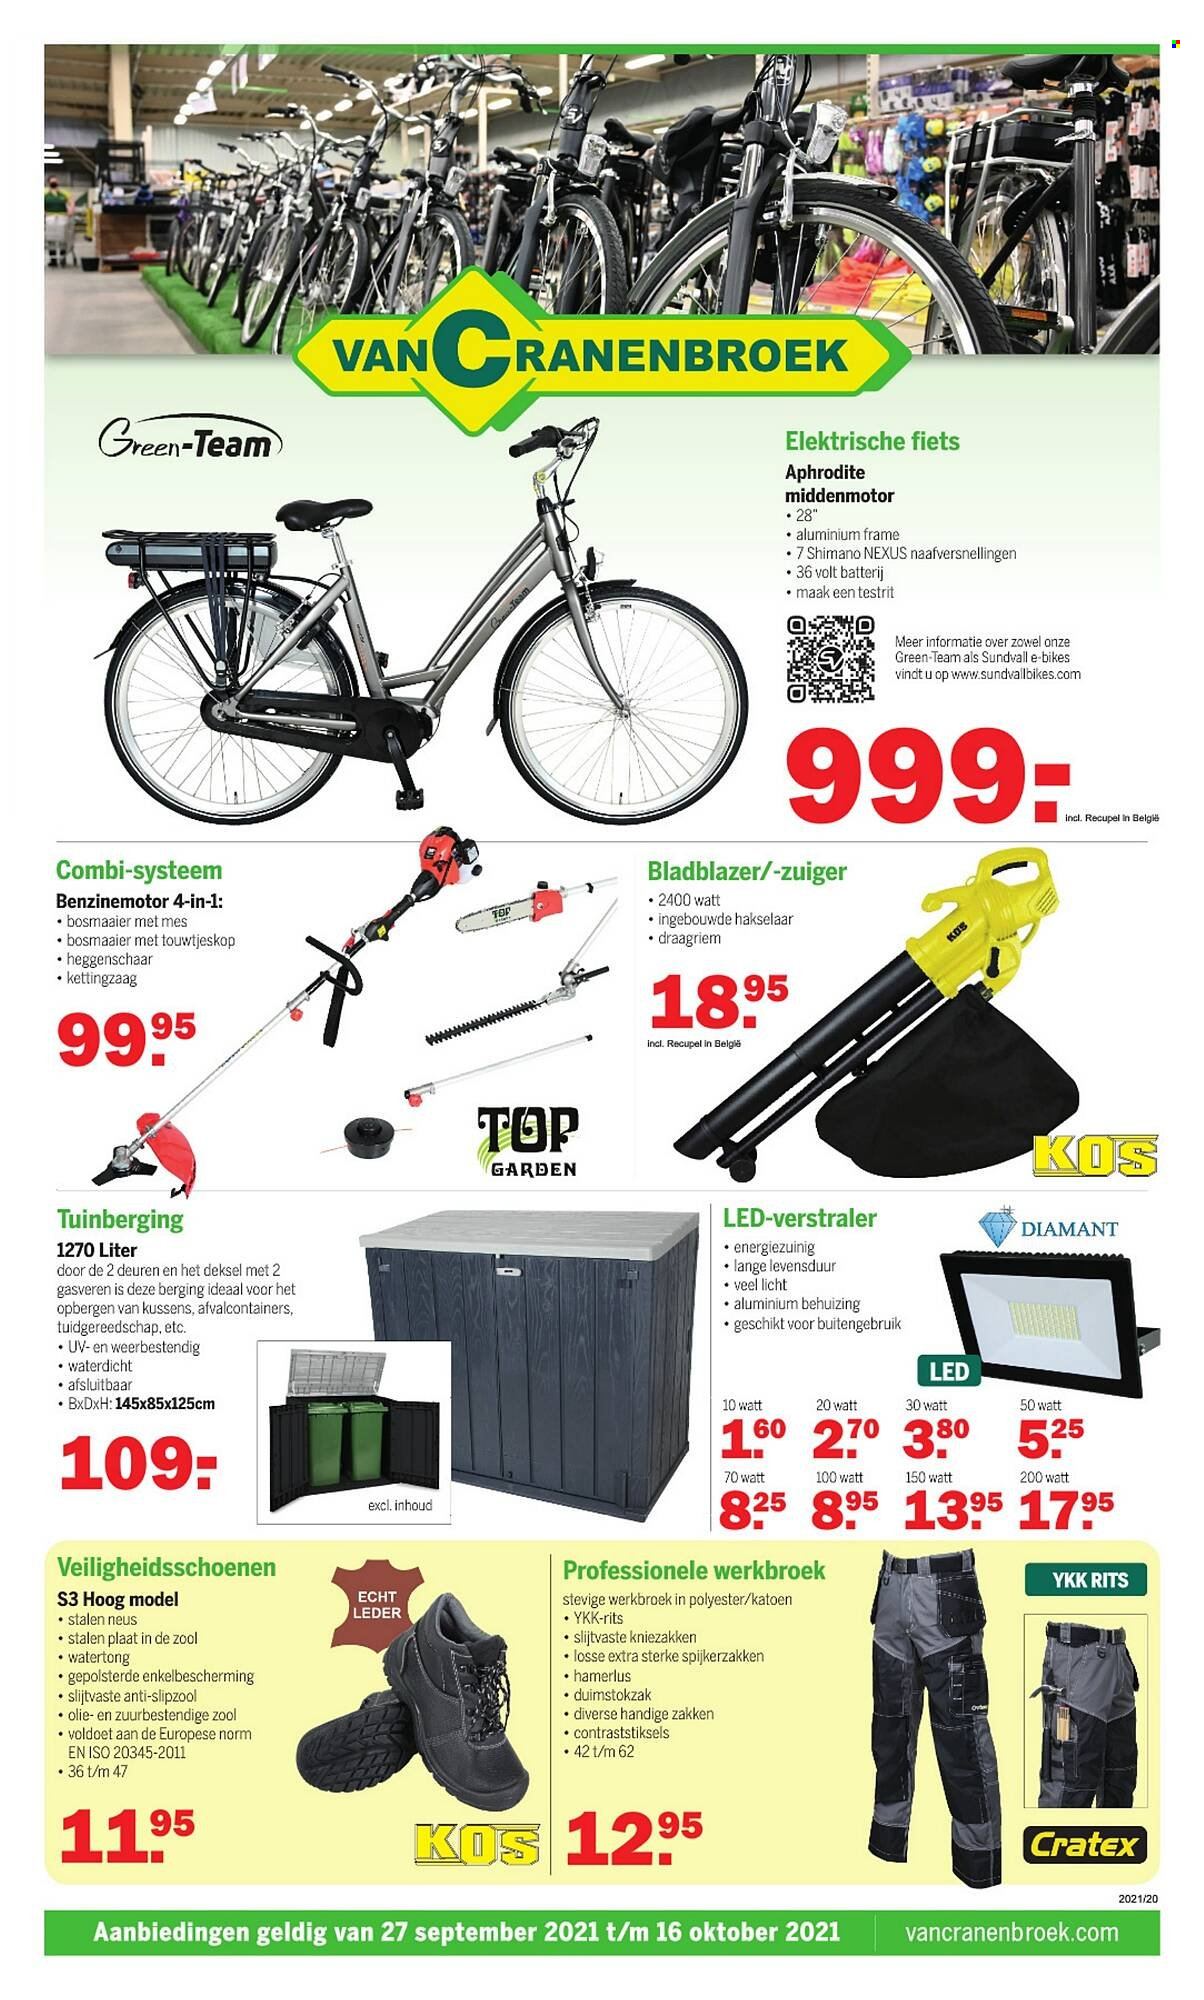 thumbnail - Van Cranenbroek-aanbieding - 27/09/2021 - 16/10/2021 -  producten in de aanbieding - top, fiets, Shimano, kettingzaag. Pagina 1.